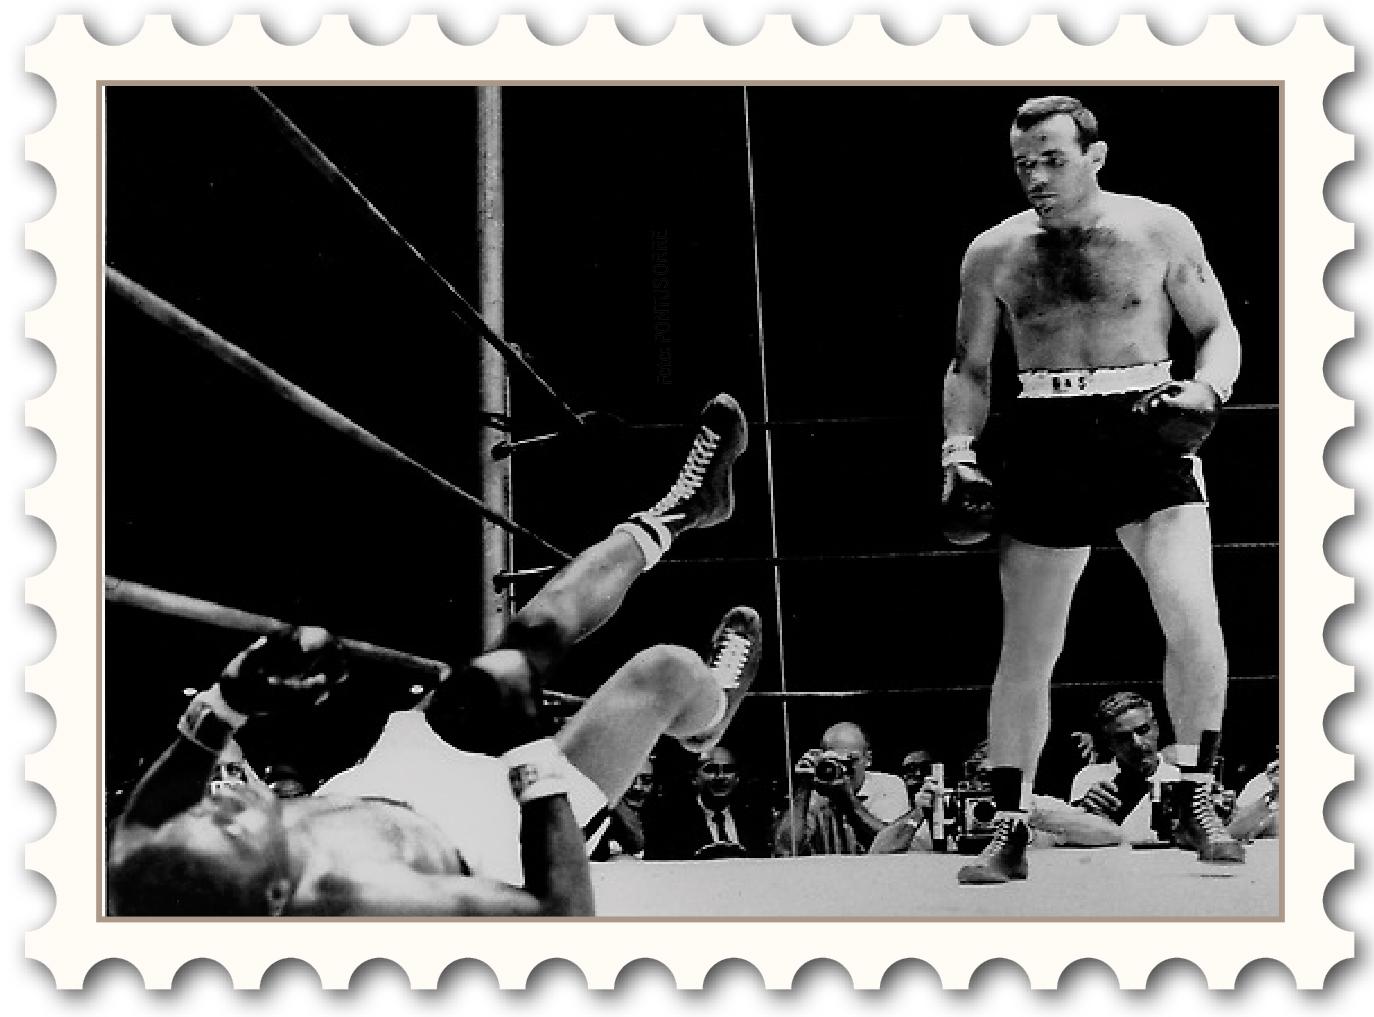 Ingos knock Var: Yankee Stadium i New York 26 juni 1959.
SIngemar ”Ingo” 
Johansson knockar Floyd Patterson och Sverige får sin första världsmästare 
i tungviktsboxning.